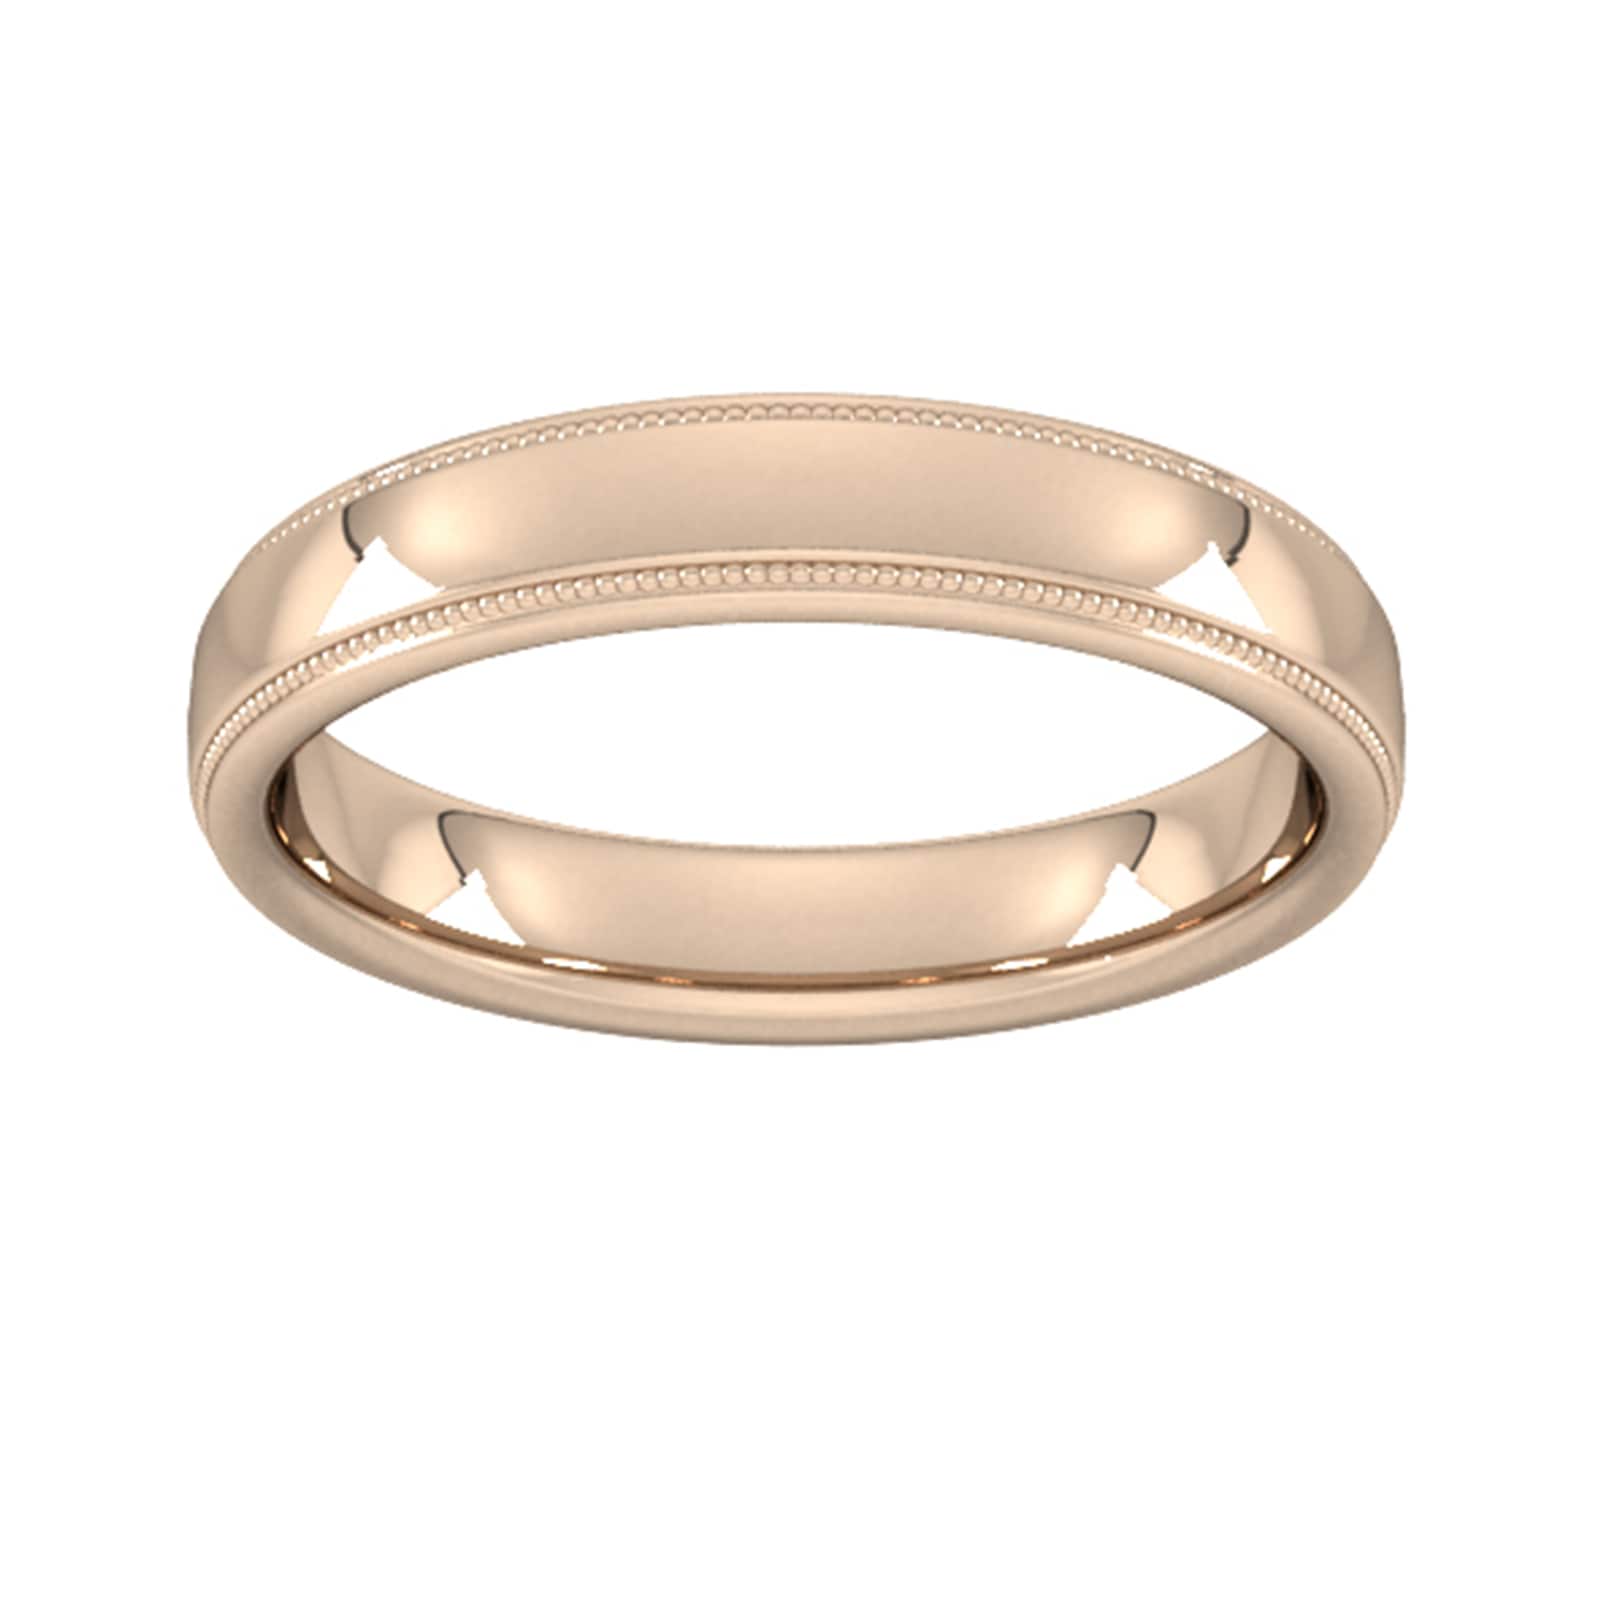 4mm Slight Court Heavy Milgrain Edge Wedding Ring In 18 Carat Rose Gold - Ring Size L